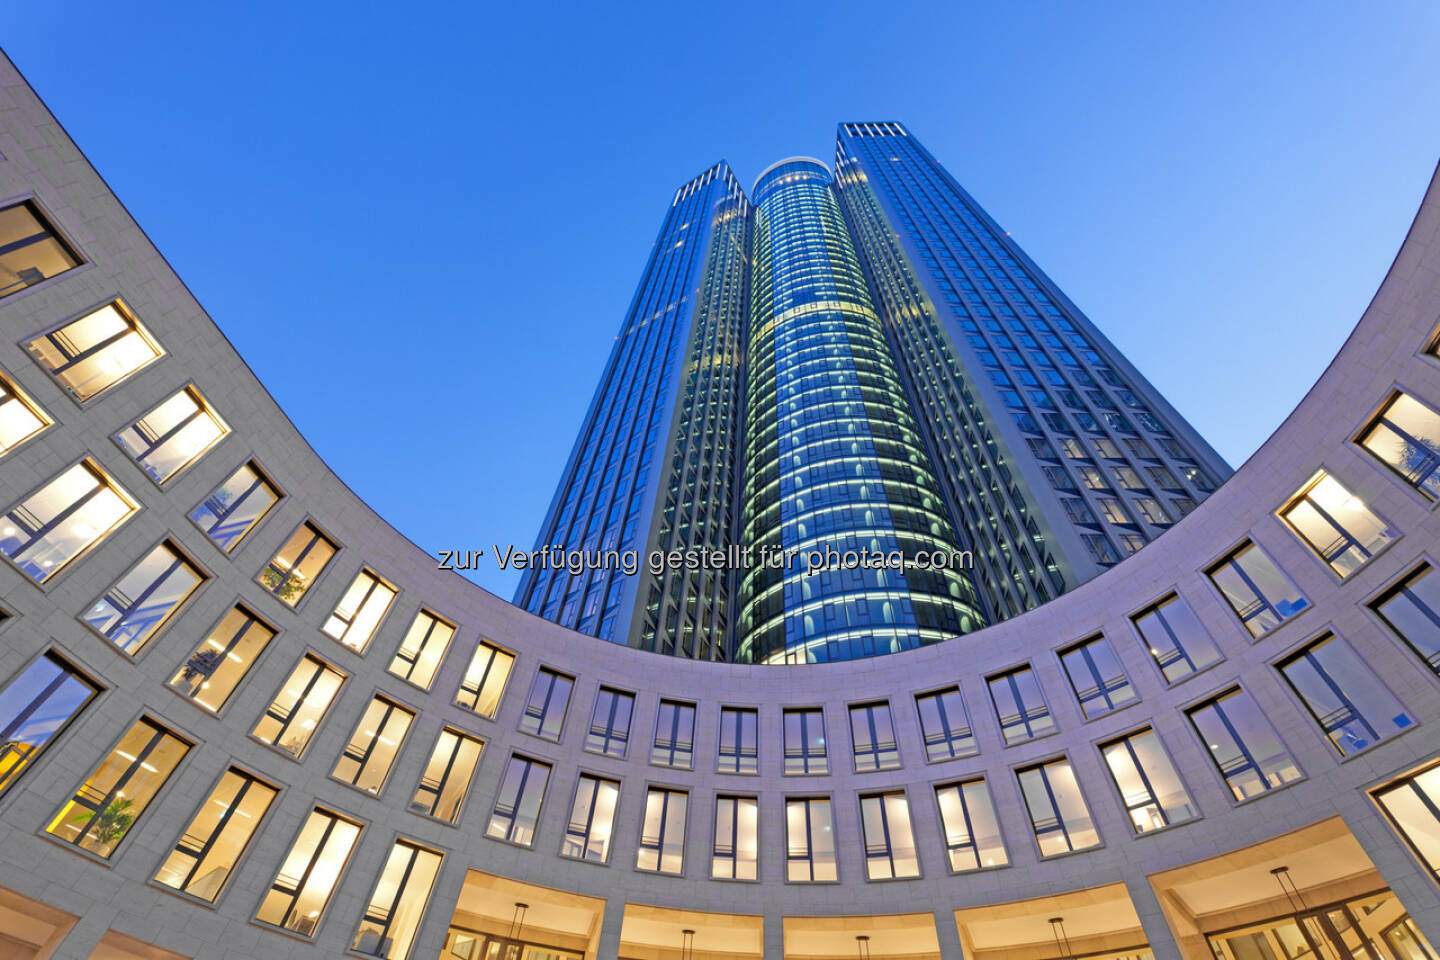 Tower 185, Frankfurt : CA Immo hat drei weitere Mietverträge über insgesamt rund 2.200 m² im Frankfurter Bürohochhaus Tower 185 abgeschlossen : Die Auslastung des über 100.000 m² großen Hochhauses liegt damit bei über 90% : © CA Immo